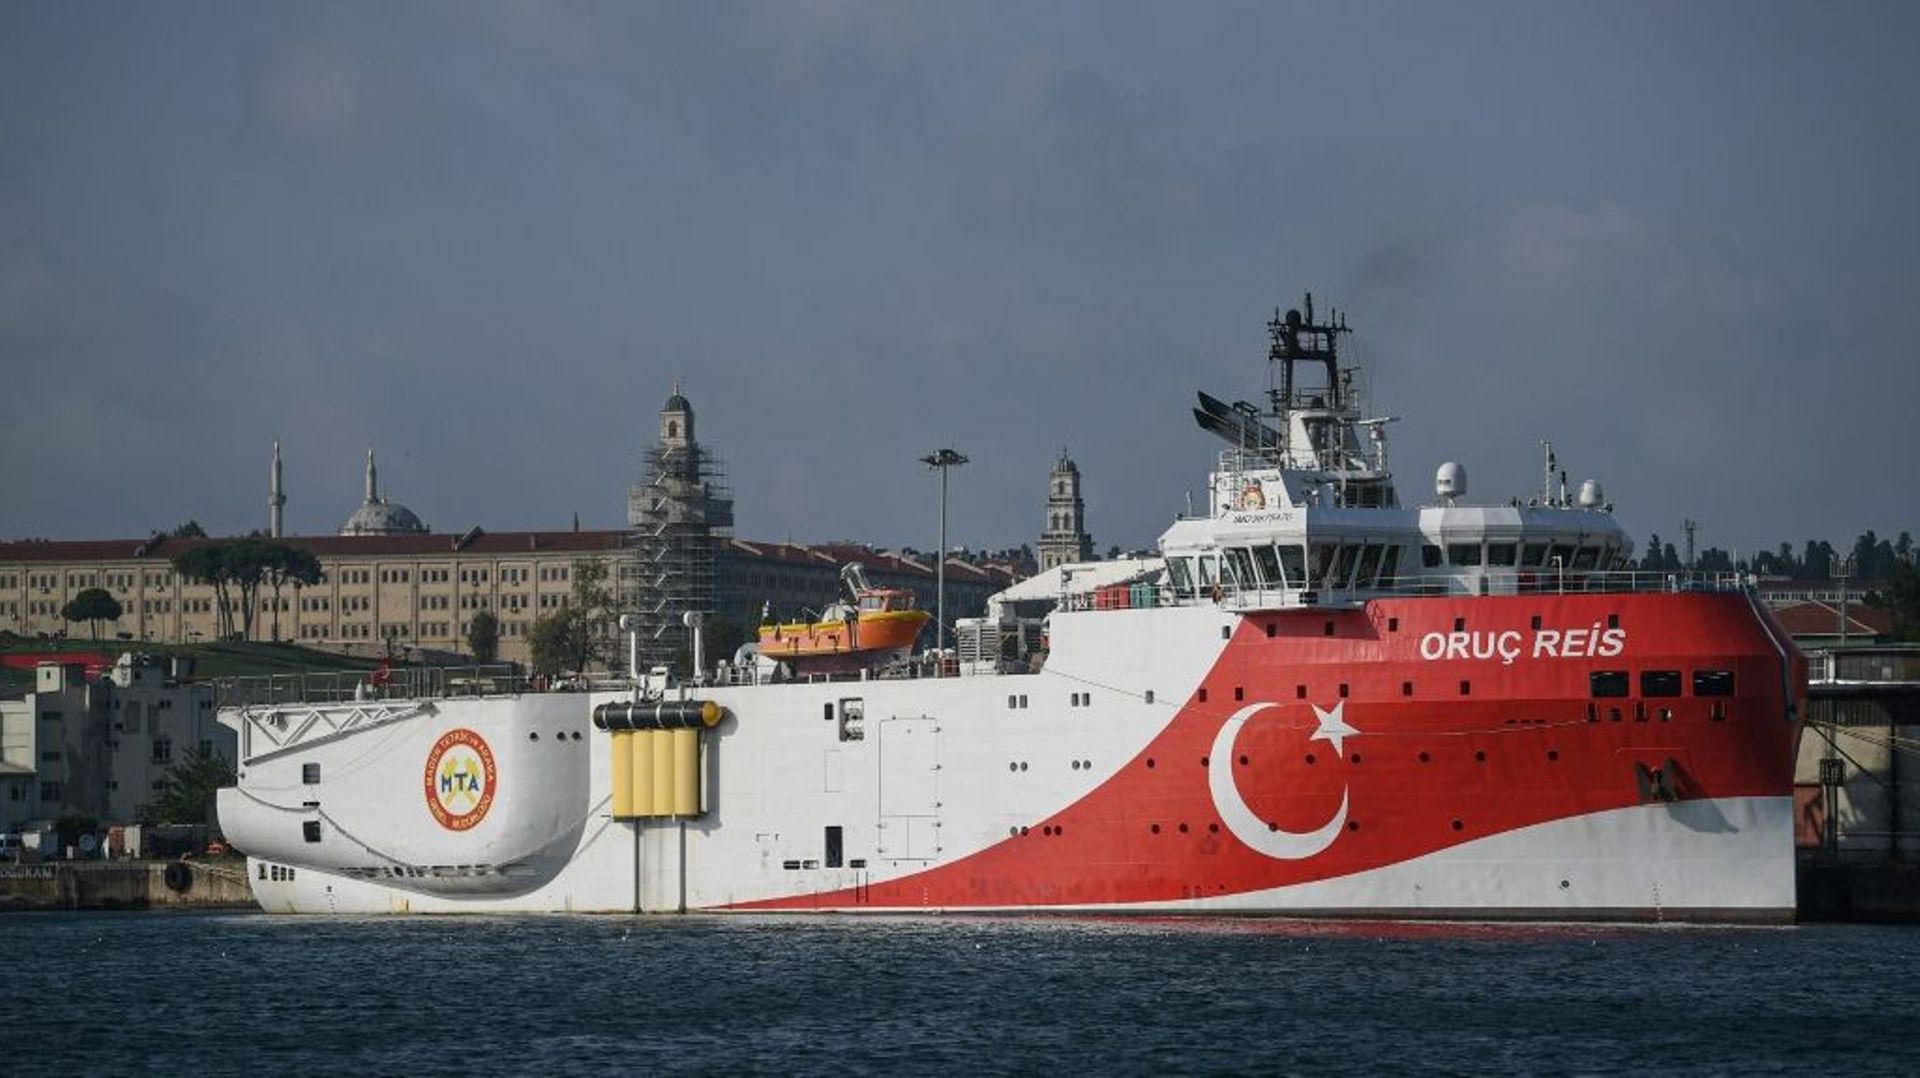 Photo prise le 23 août 2019 dans le port d'Istanbul du navire d'exploration turc Oruç Reis dont le renvoi par la Turquie en Méditerranée orientale suscite une crise avec la Grèce